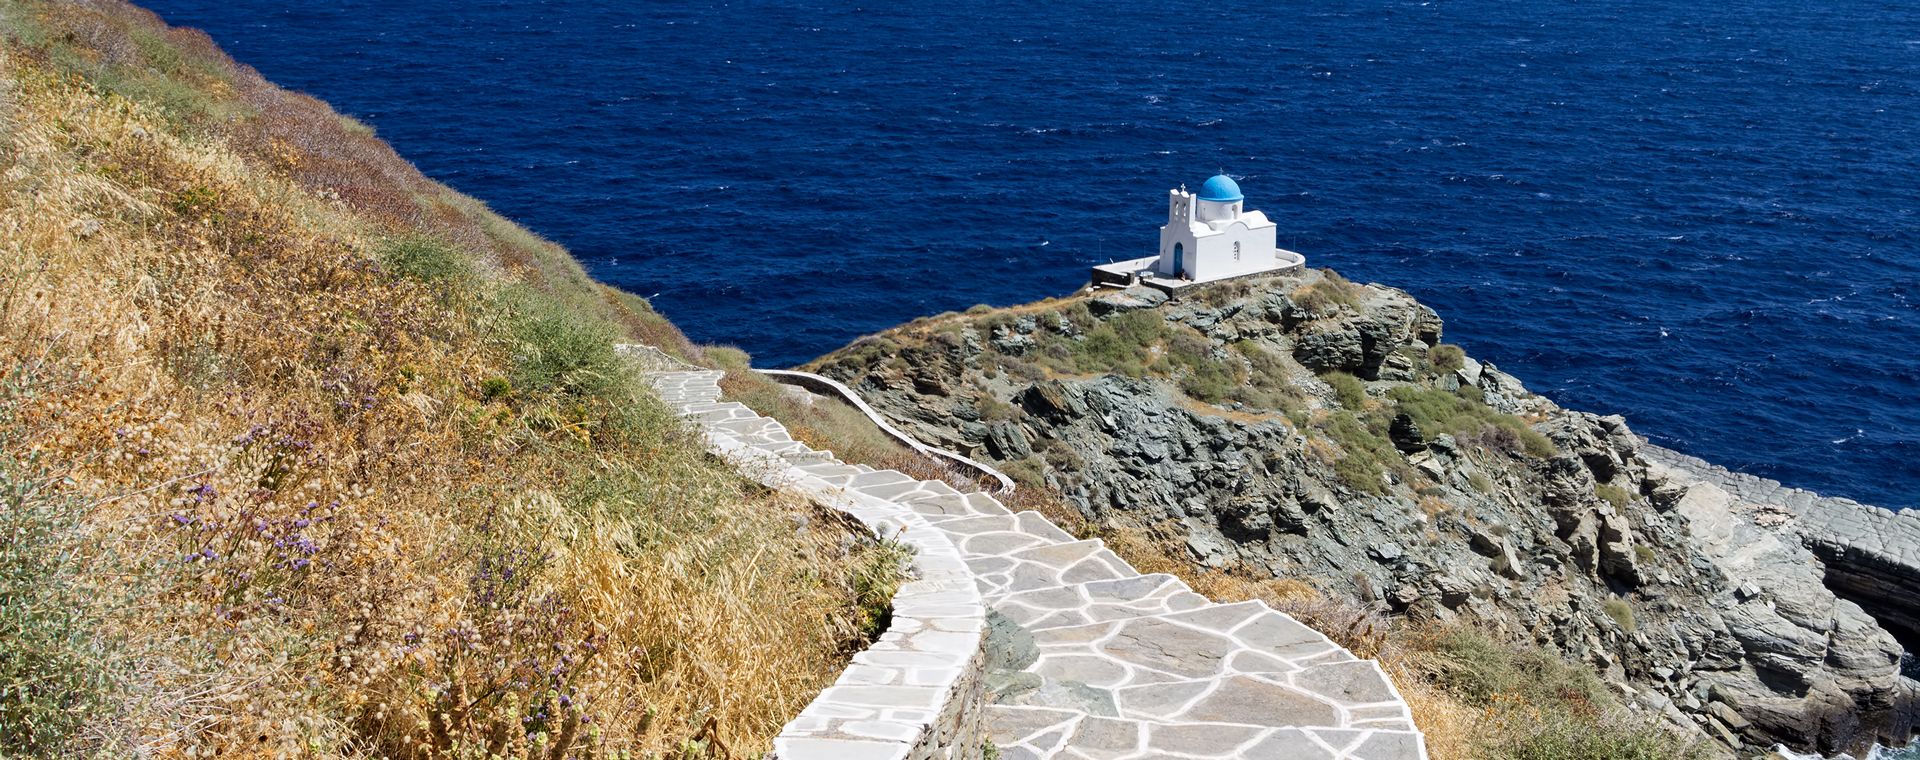 La chapelle des Sept Martyrs sur l'île de Sifnos, Cyclades